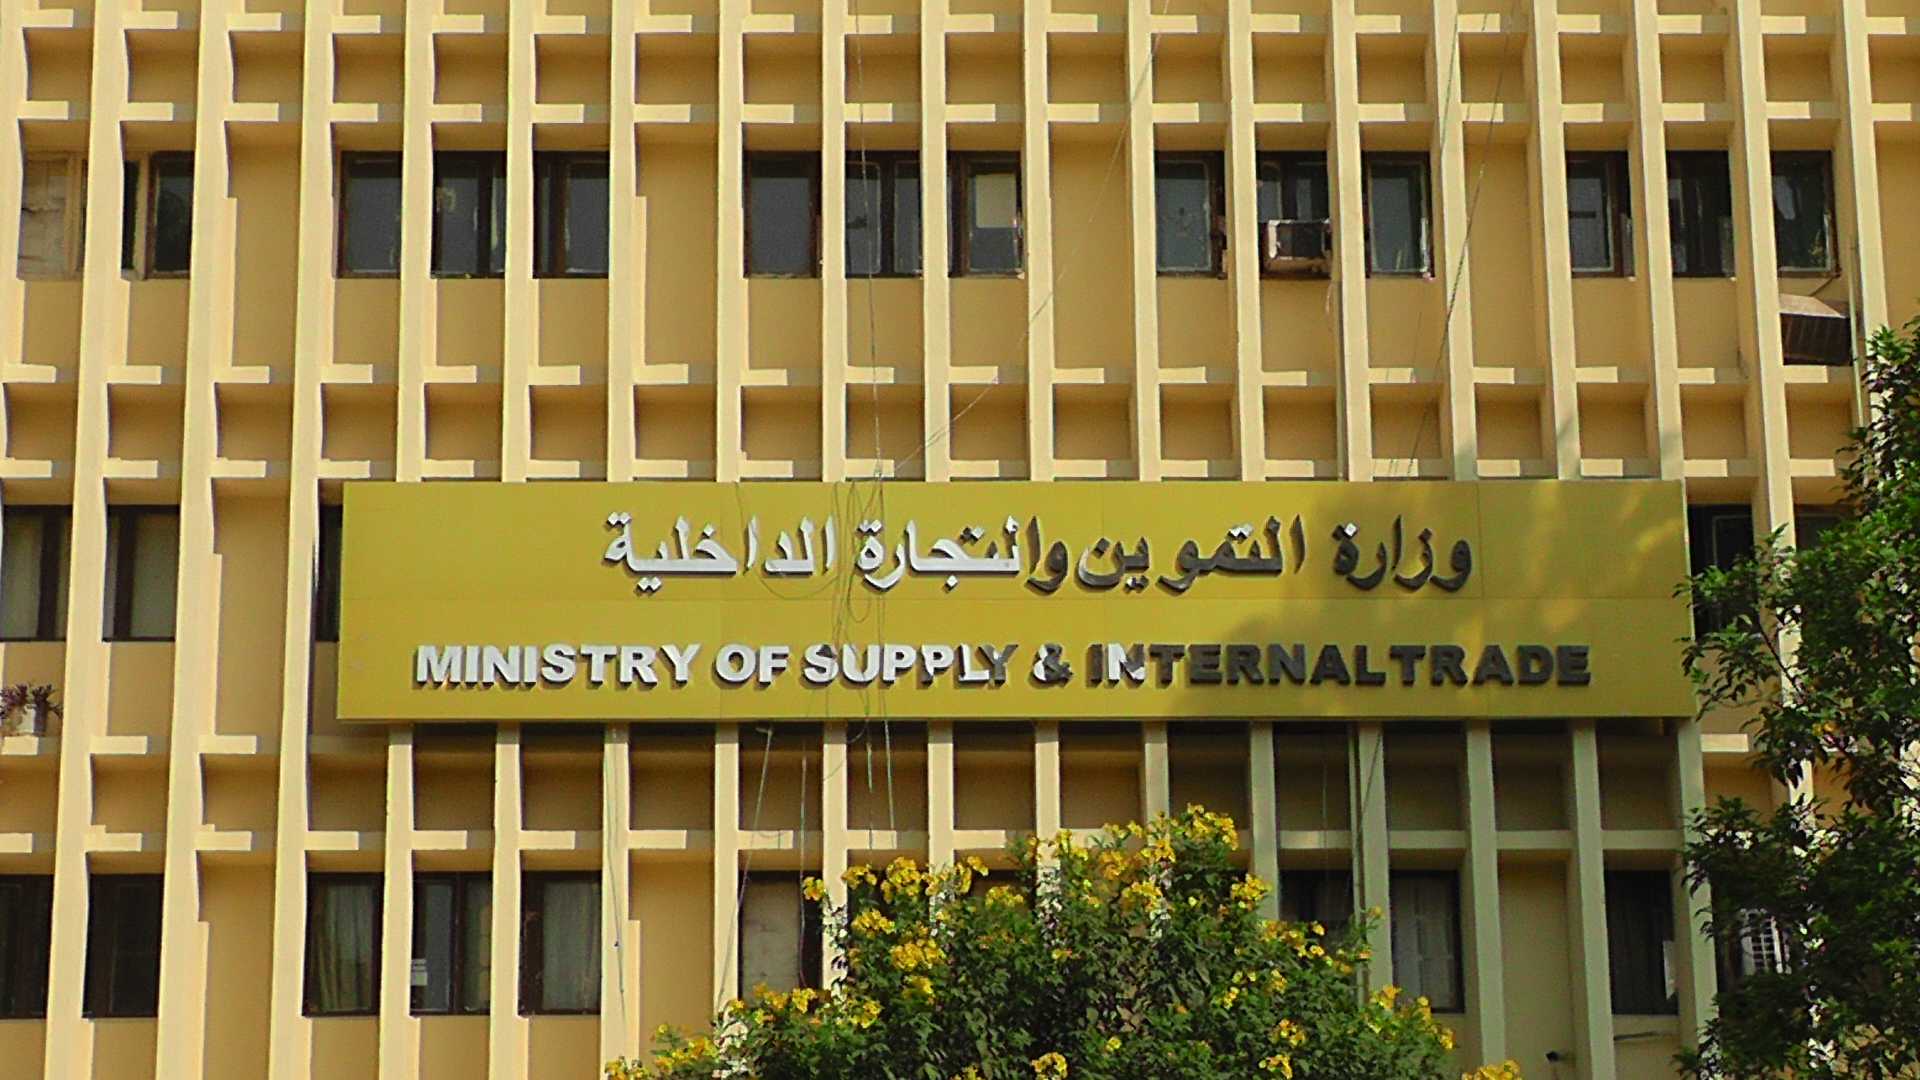 وزارة التموين والتجارة الداخلية